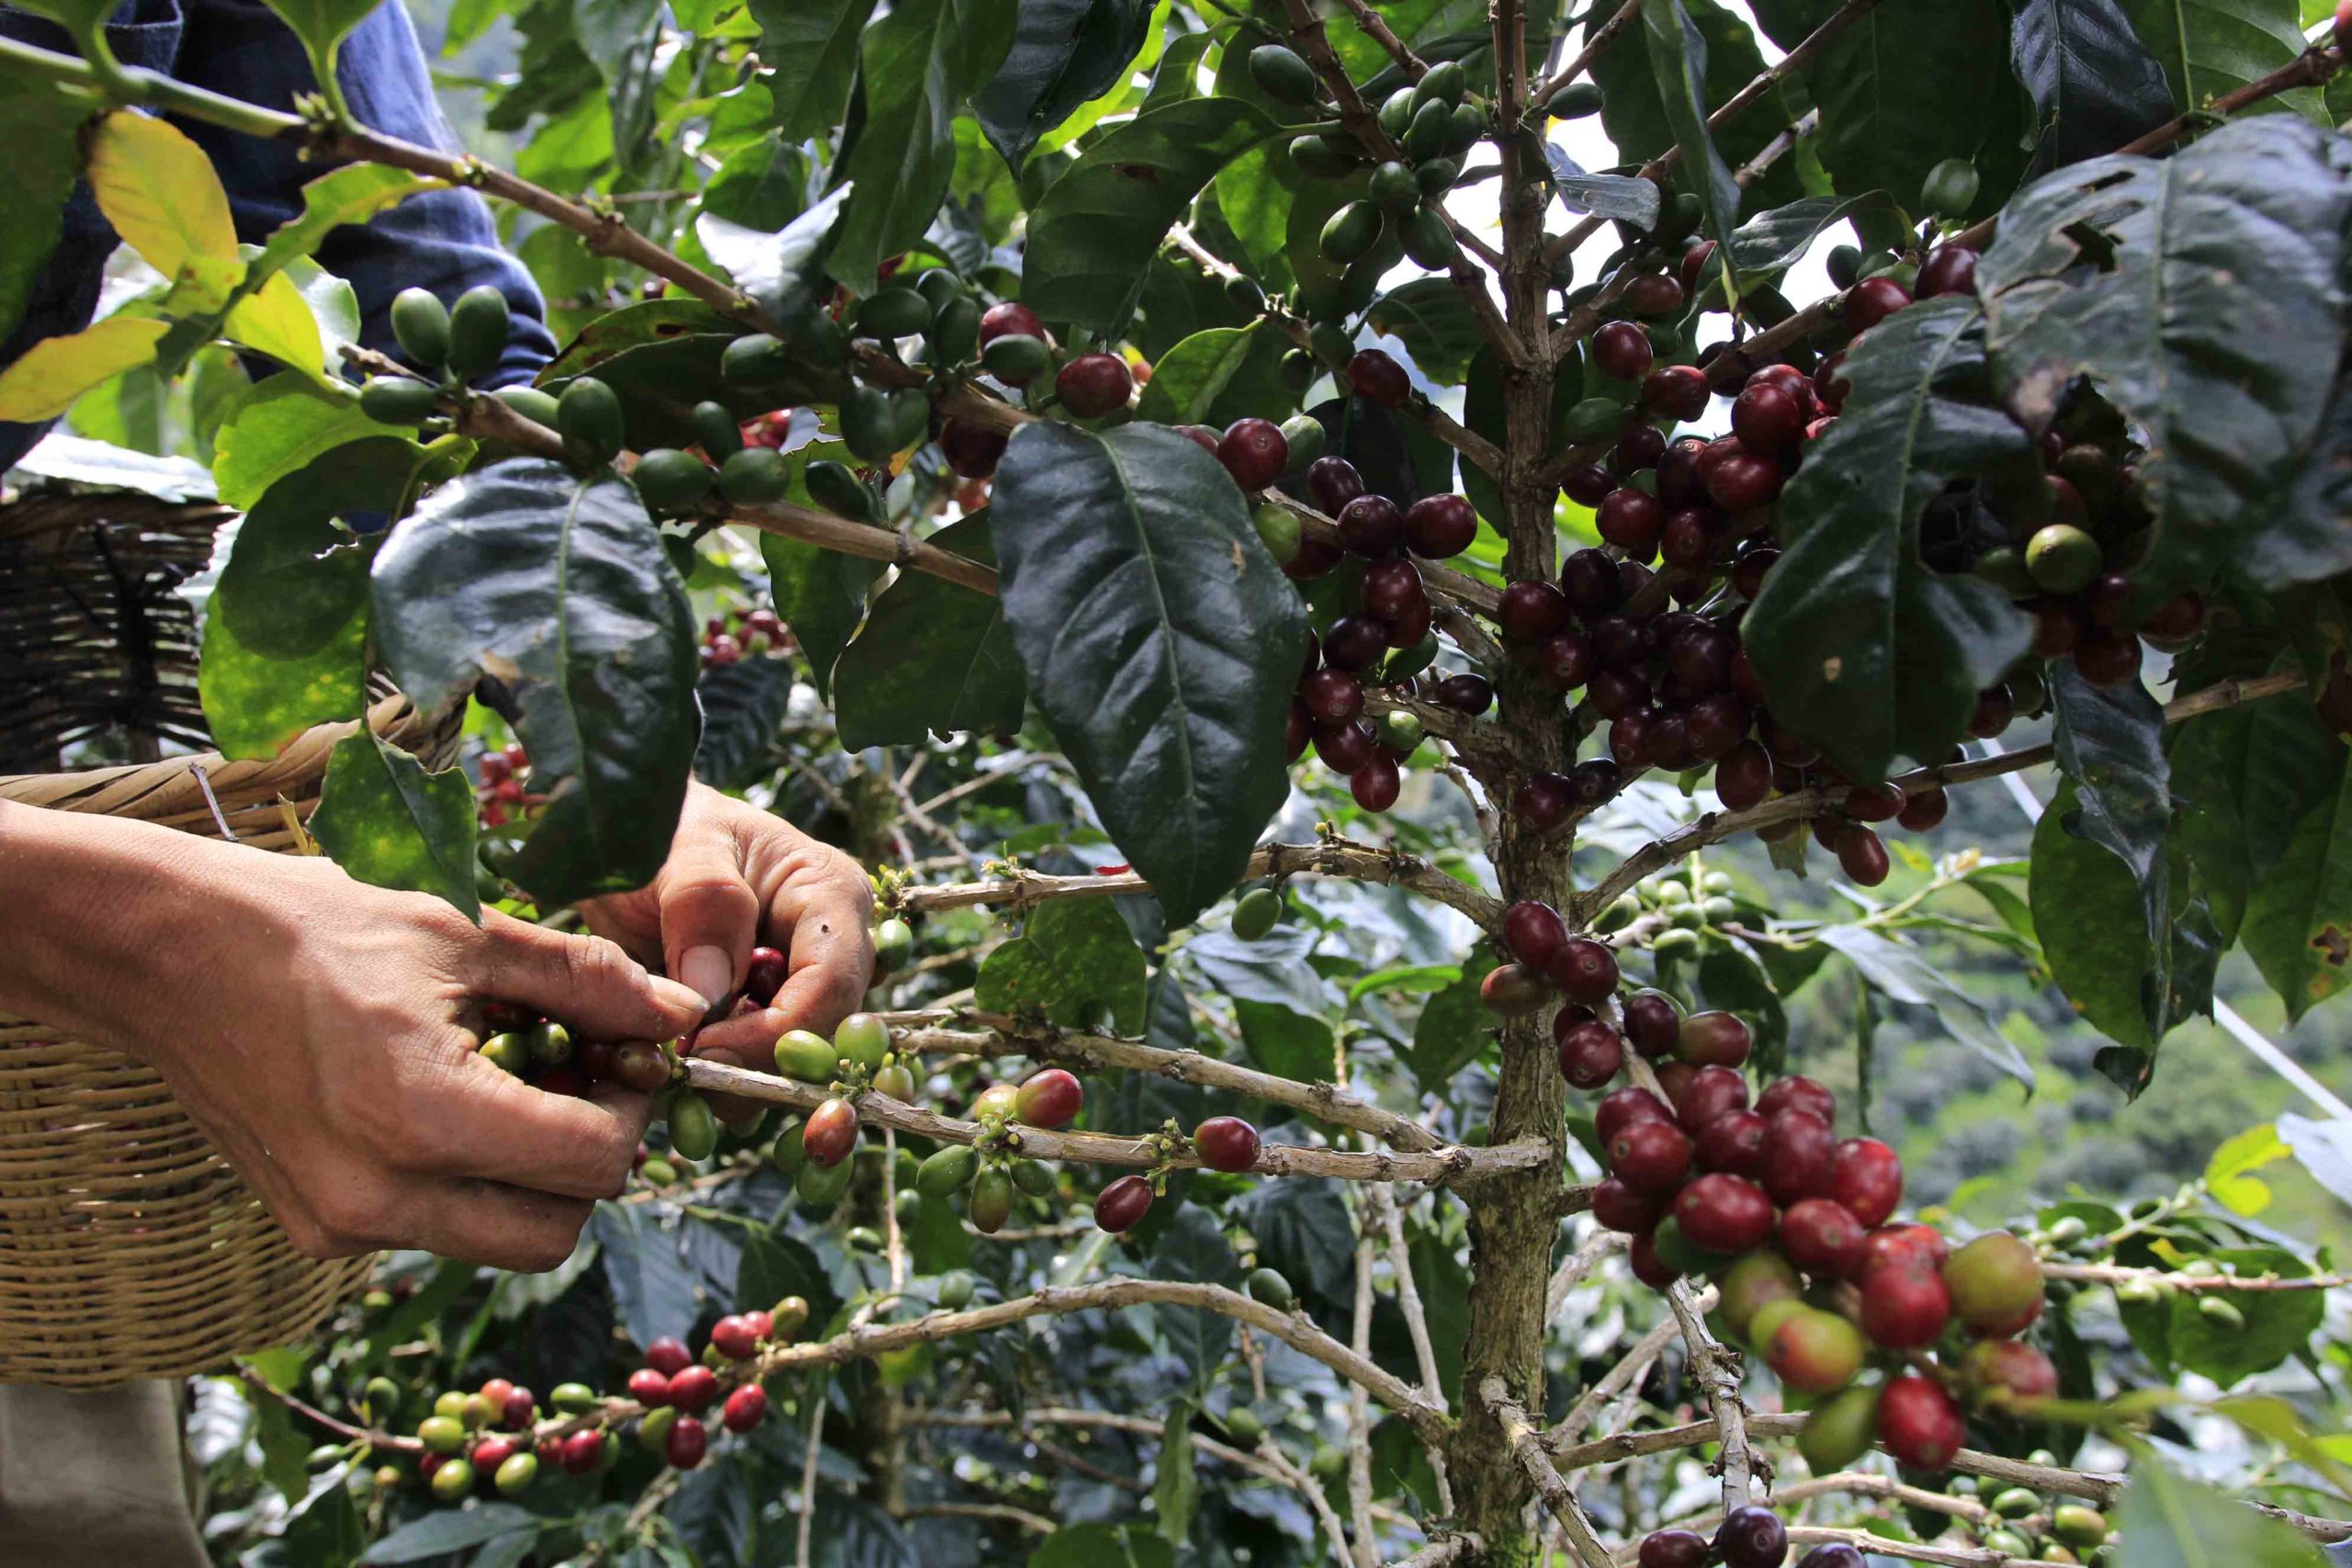 Para prolongar la vida y mejores cosechas de una planta de café, los productores recomiendan a los recolectores cortar grano a grano sin que la planta pierda sus hojas. Foto CC/Amílcar Izaguirre